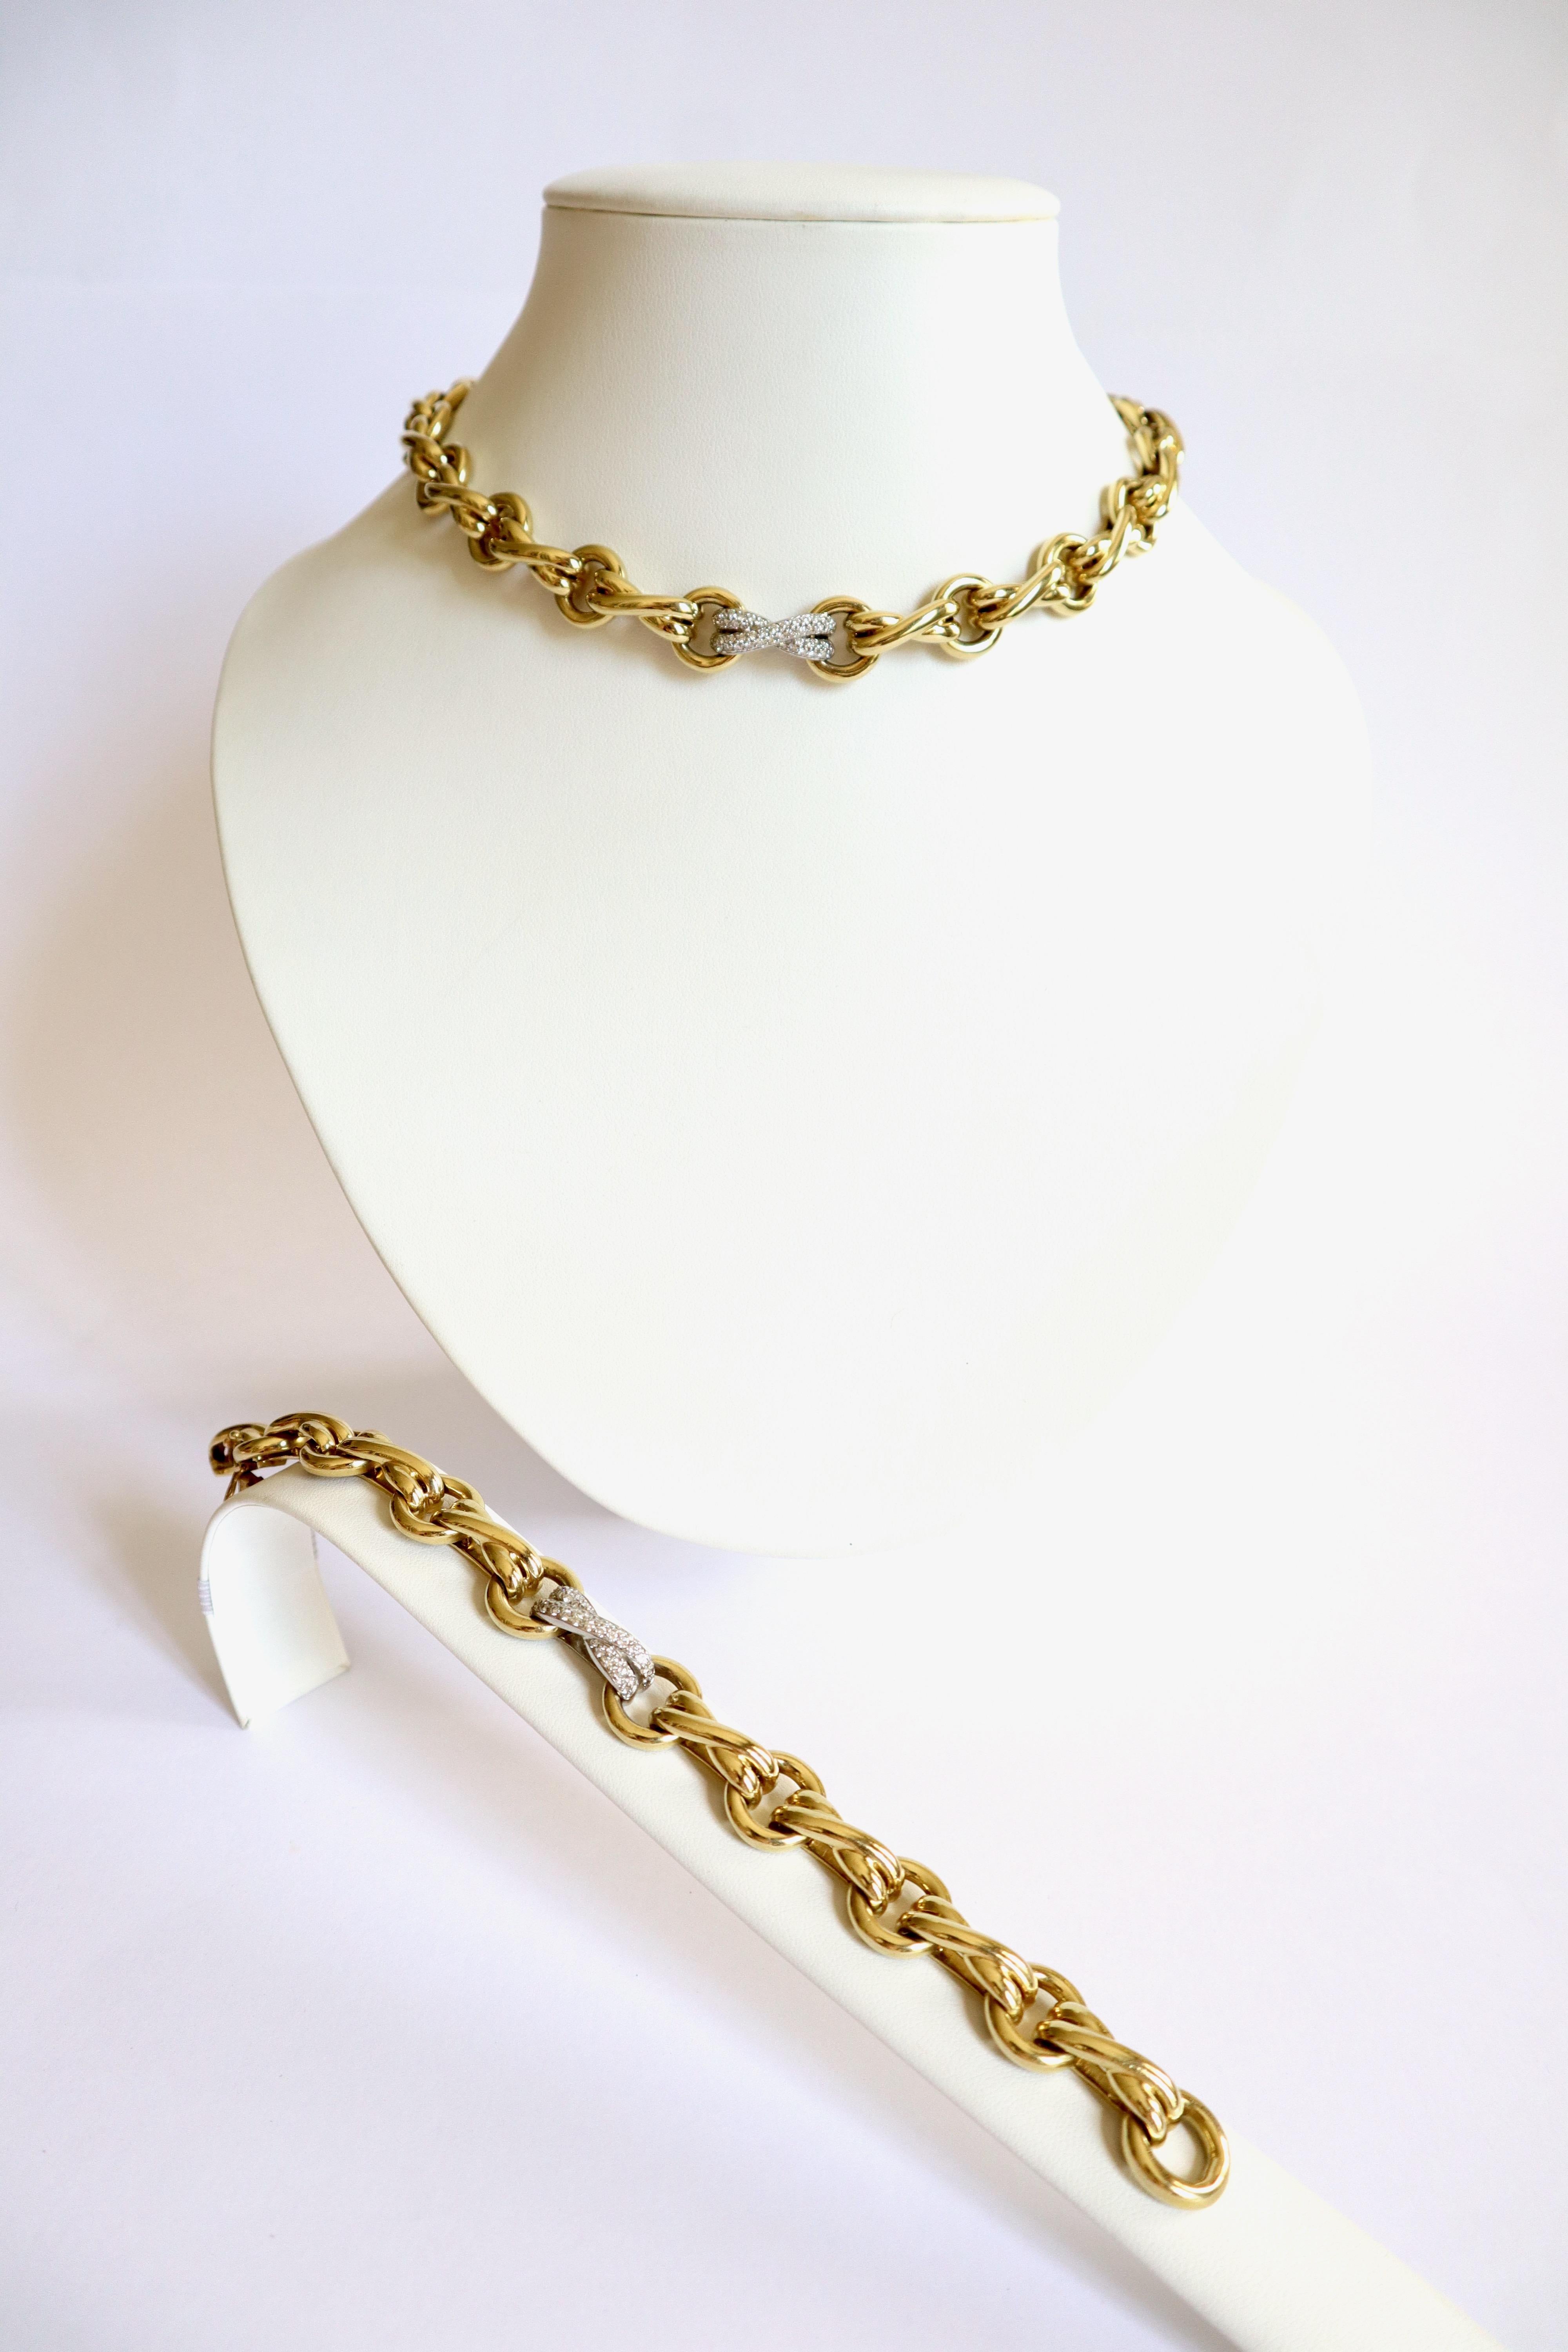 Tiffany's Paloma Picasso Armband und Halskette aus 18kt Gelbgold, Platin und Diamanten. Zusammen können sie eine lange Halskette bilden.
Alternate Circles of interlaced double Links. Ein Platinum Link ist mit Diamanten für etwa 0,5 bis 0,8 Karat auf